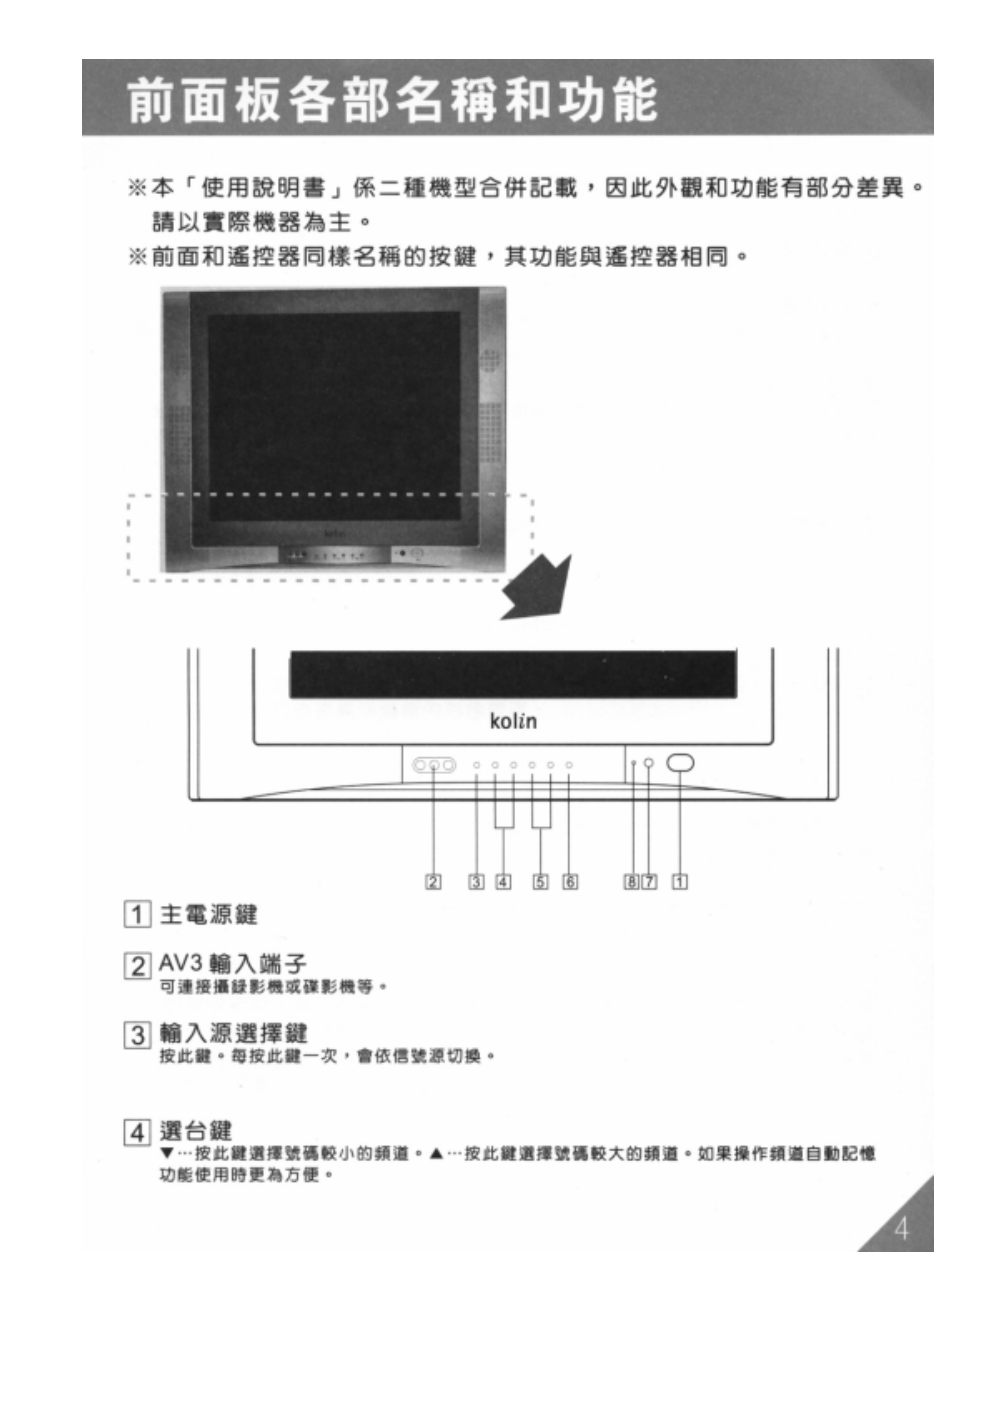 歌林HCT-293型数位倍频电视机使用说明书-4